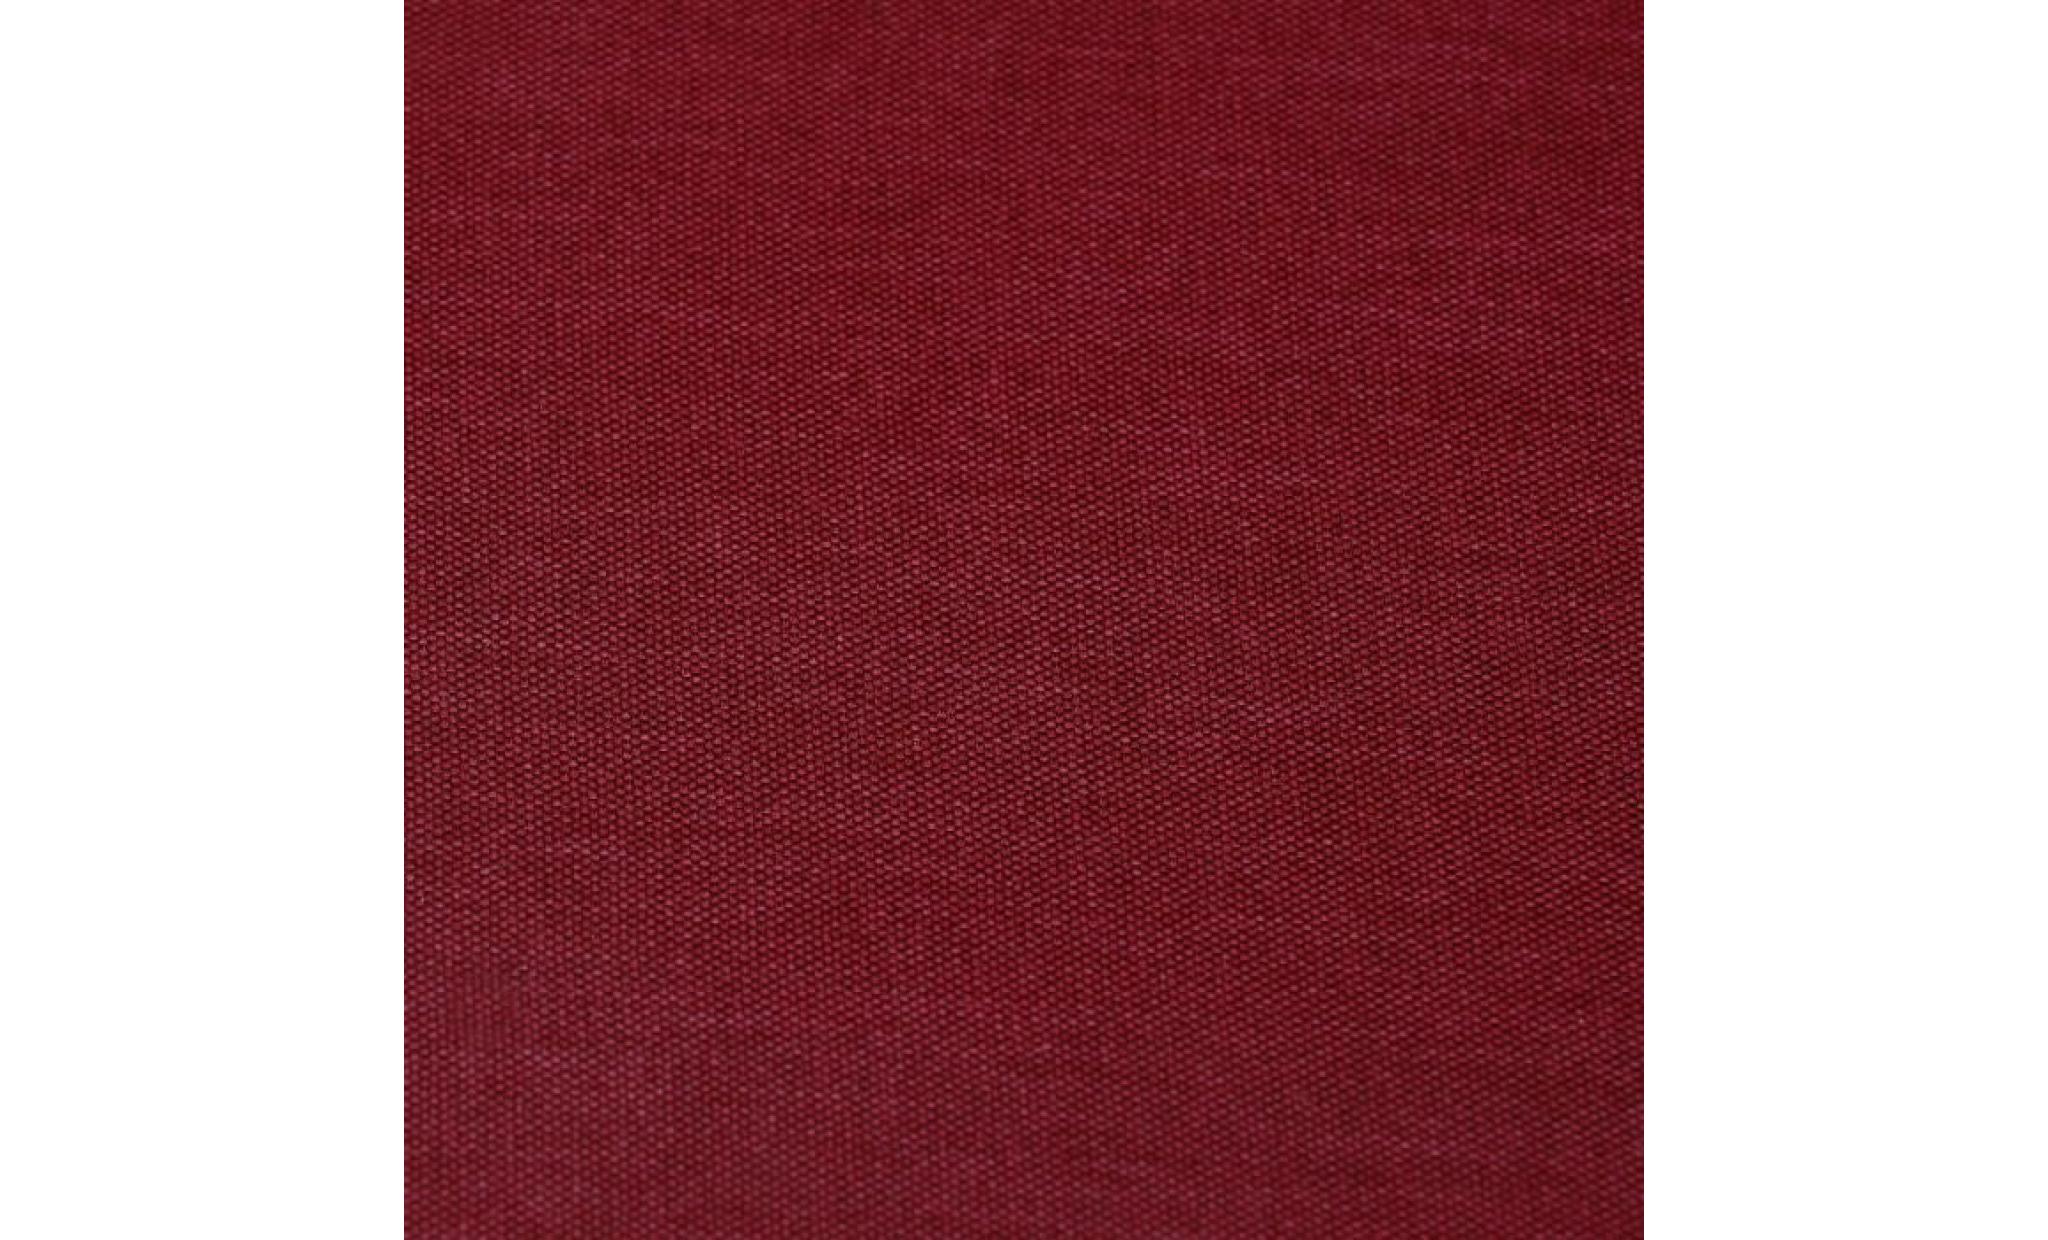 ibra canapé angle réversible 3/4 places   tissu rouge   scandinave   l 203 x p 88 130 cm pas cher